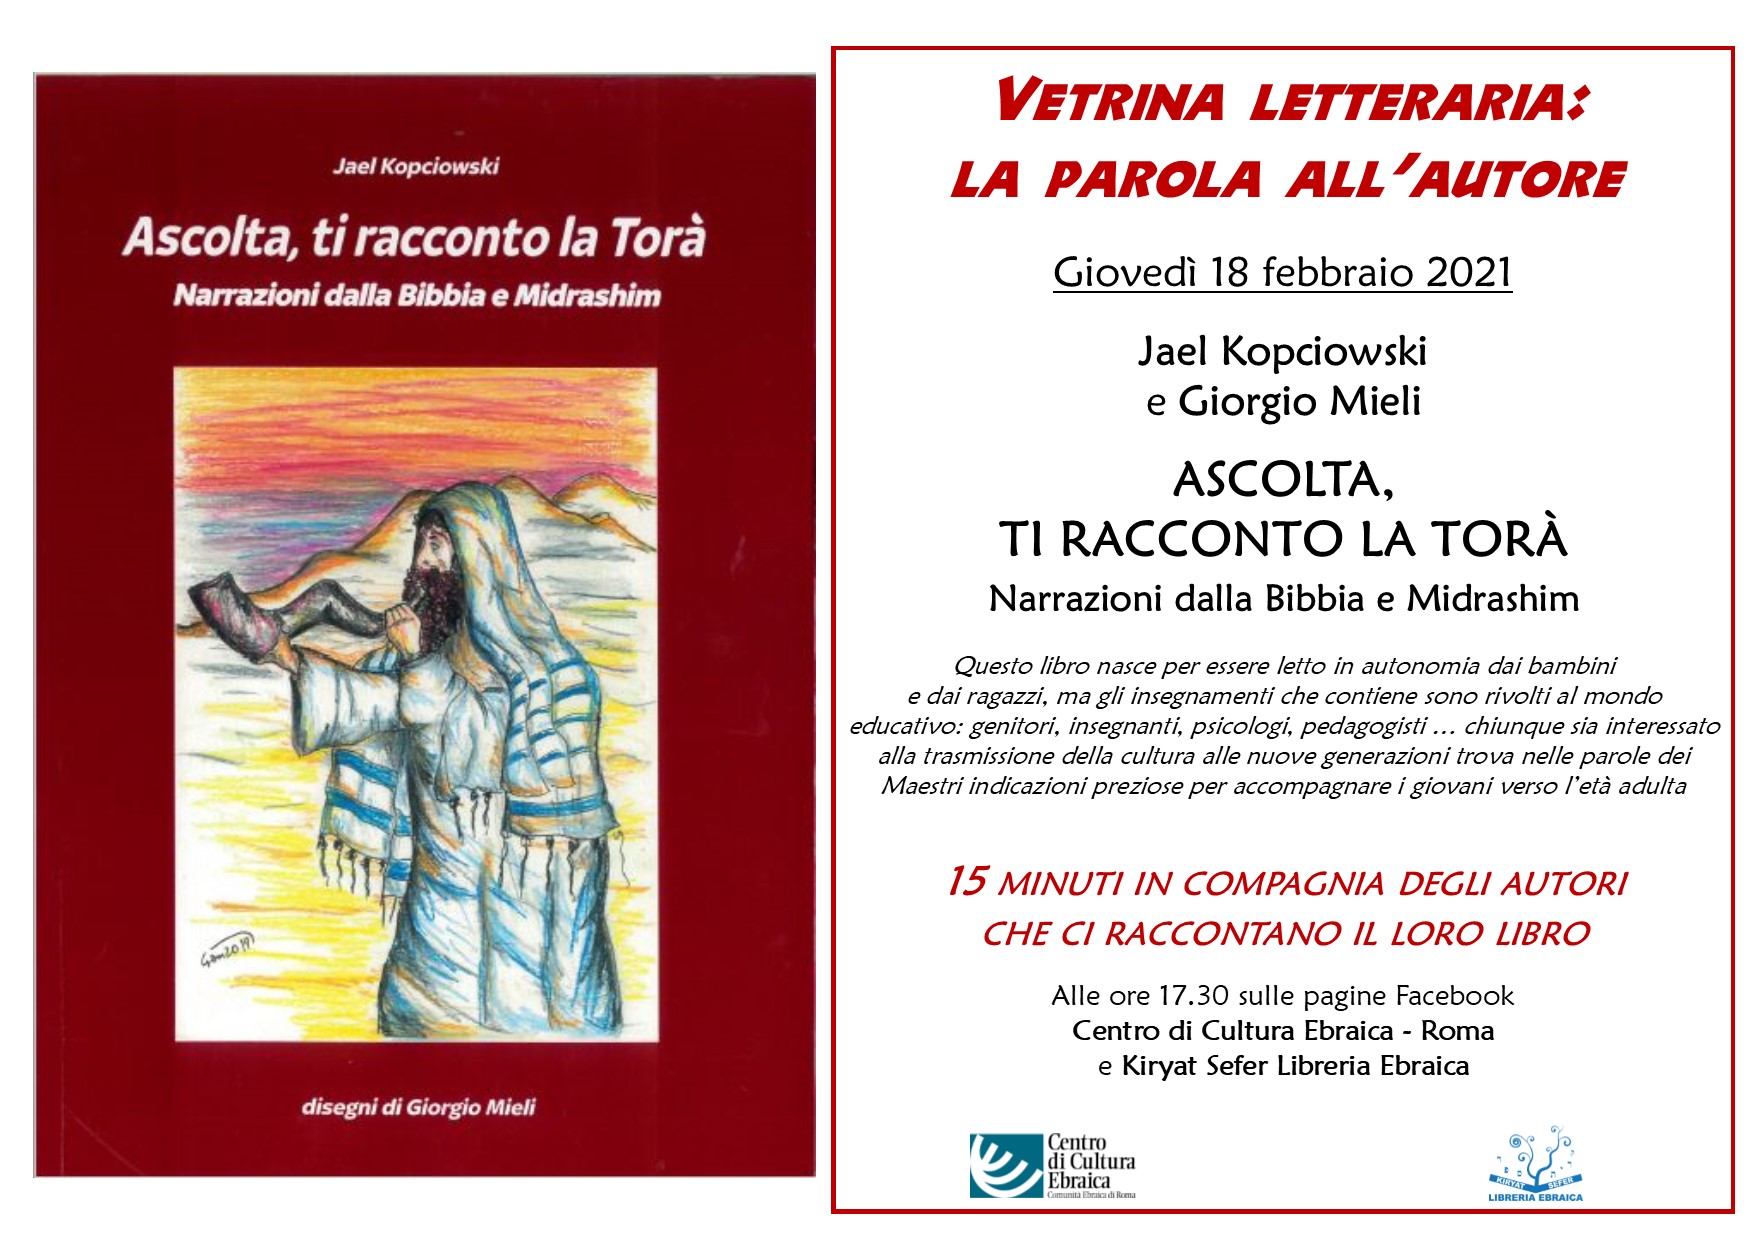 https://culturaebraica.roma.it/wp-content/uploads/2021/02/Vetrina-letteraria-Ascolta-ti-racconto-la-Tora.jpg